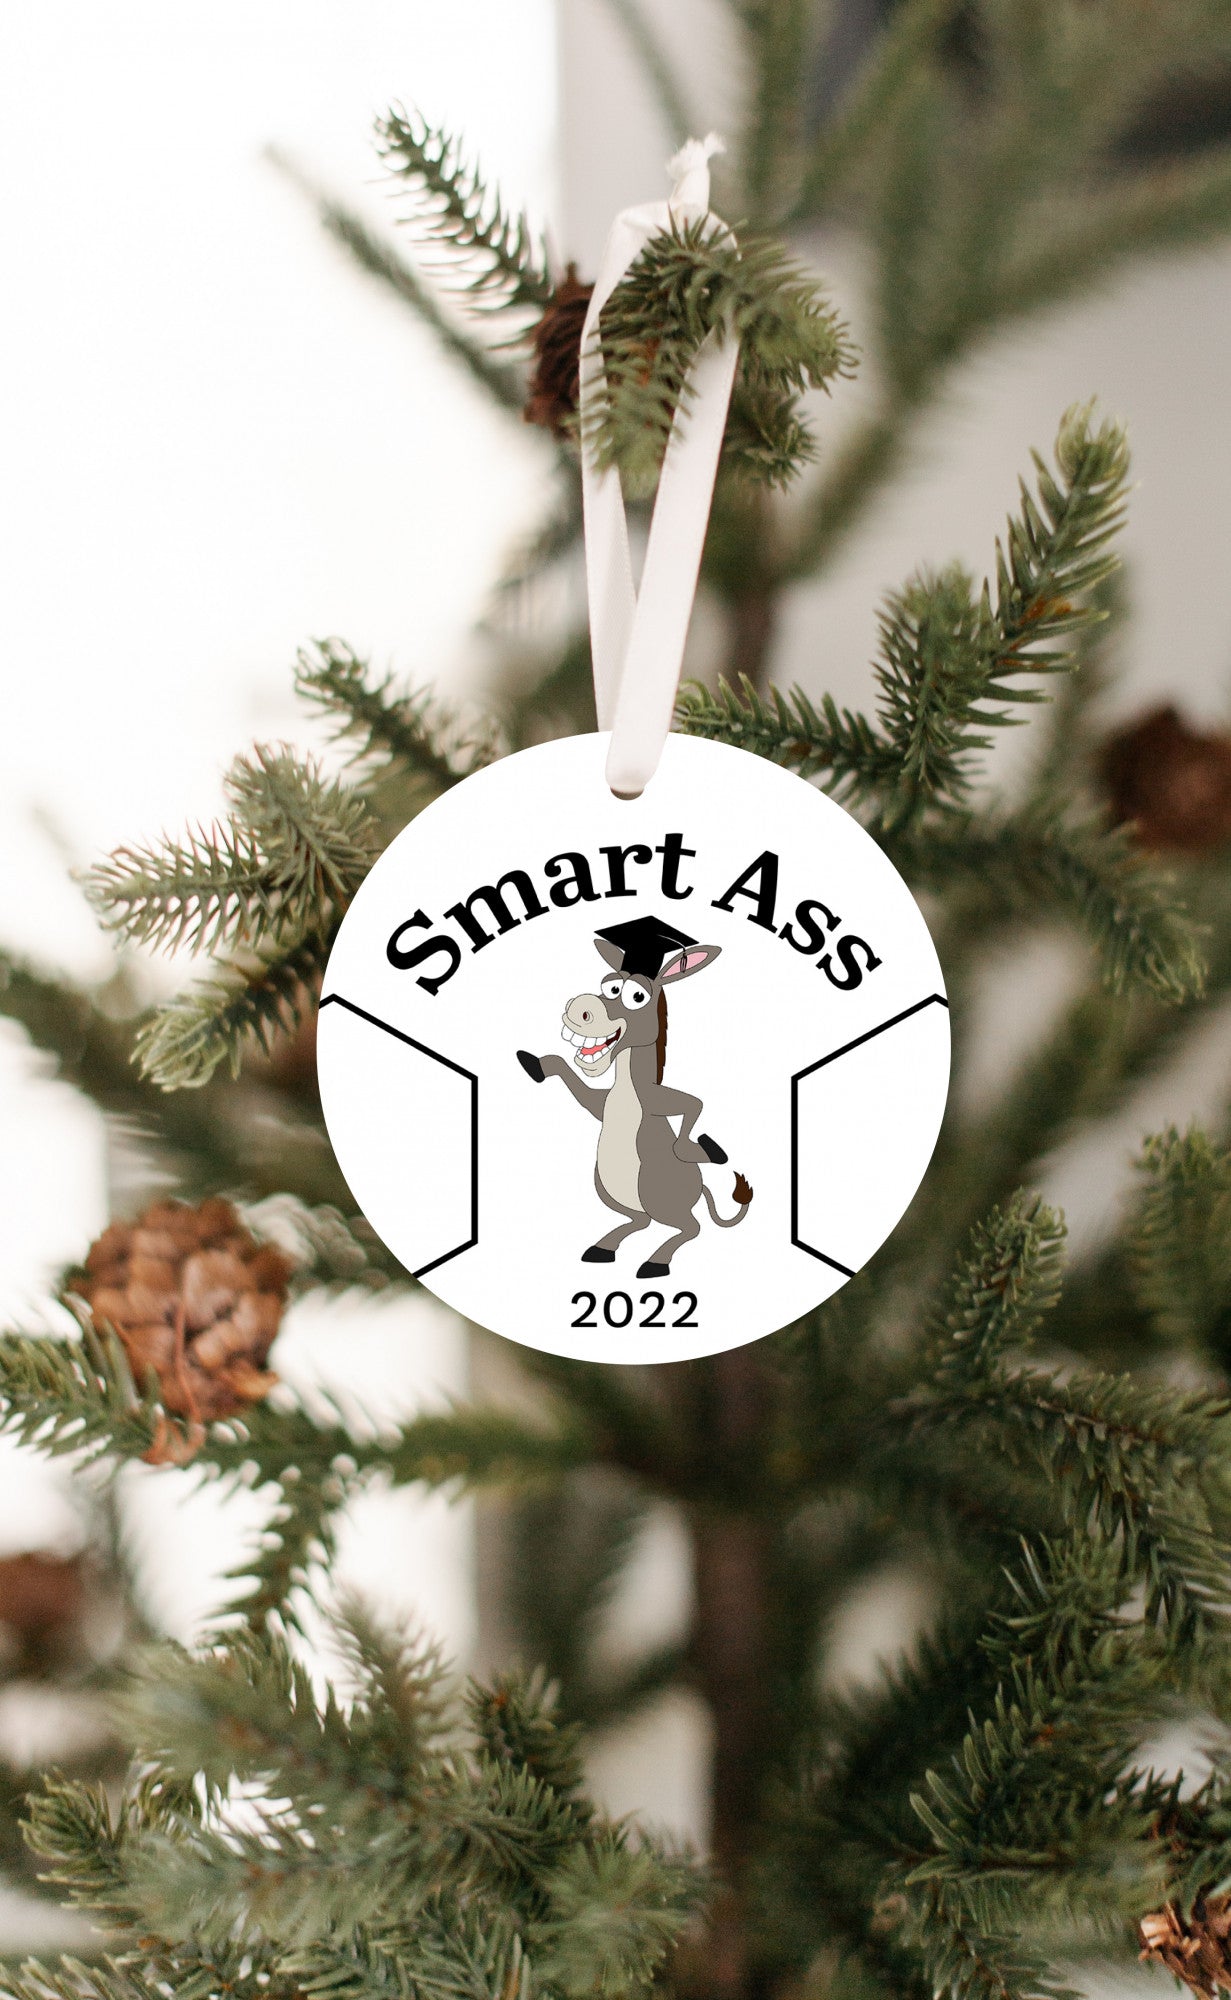 Smart Ass 2022 Graduation Ornament